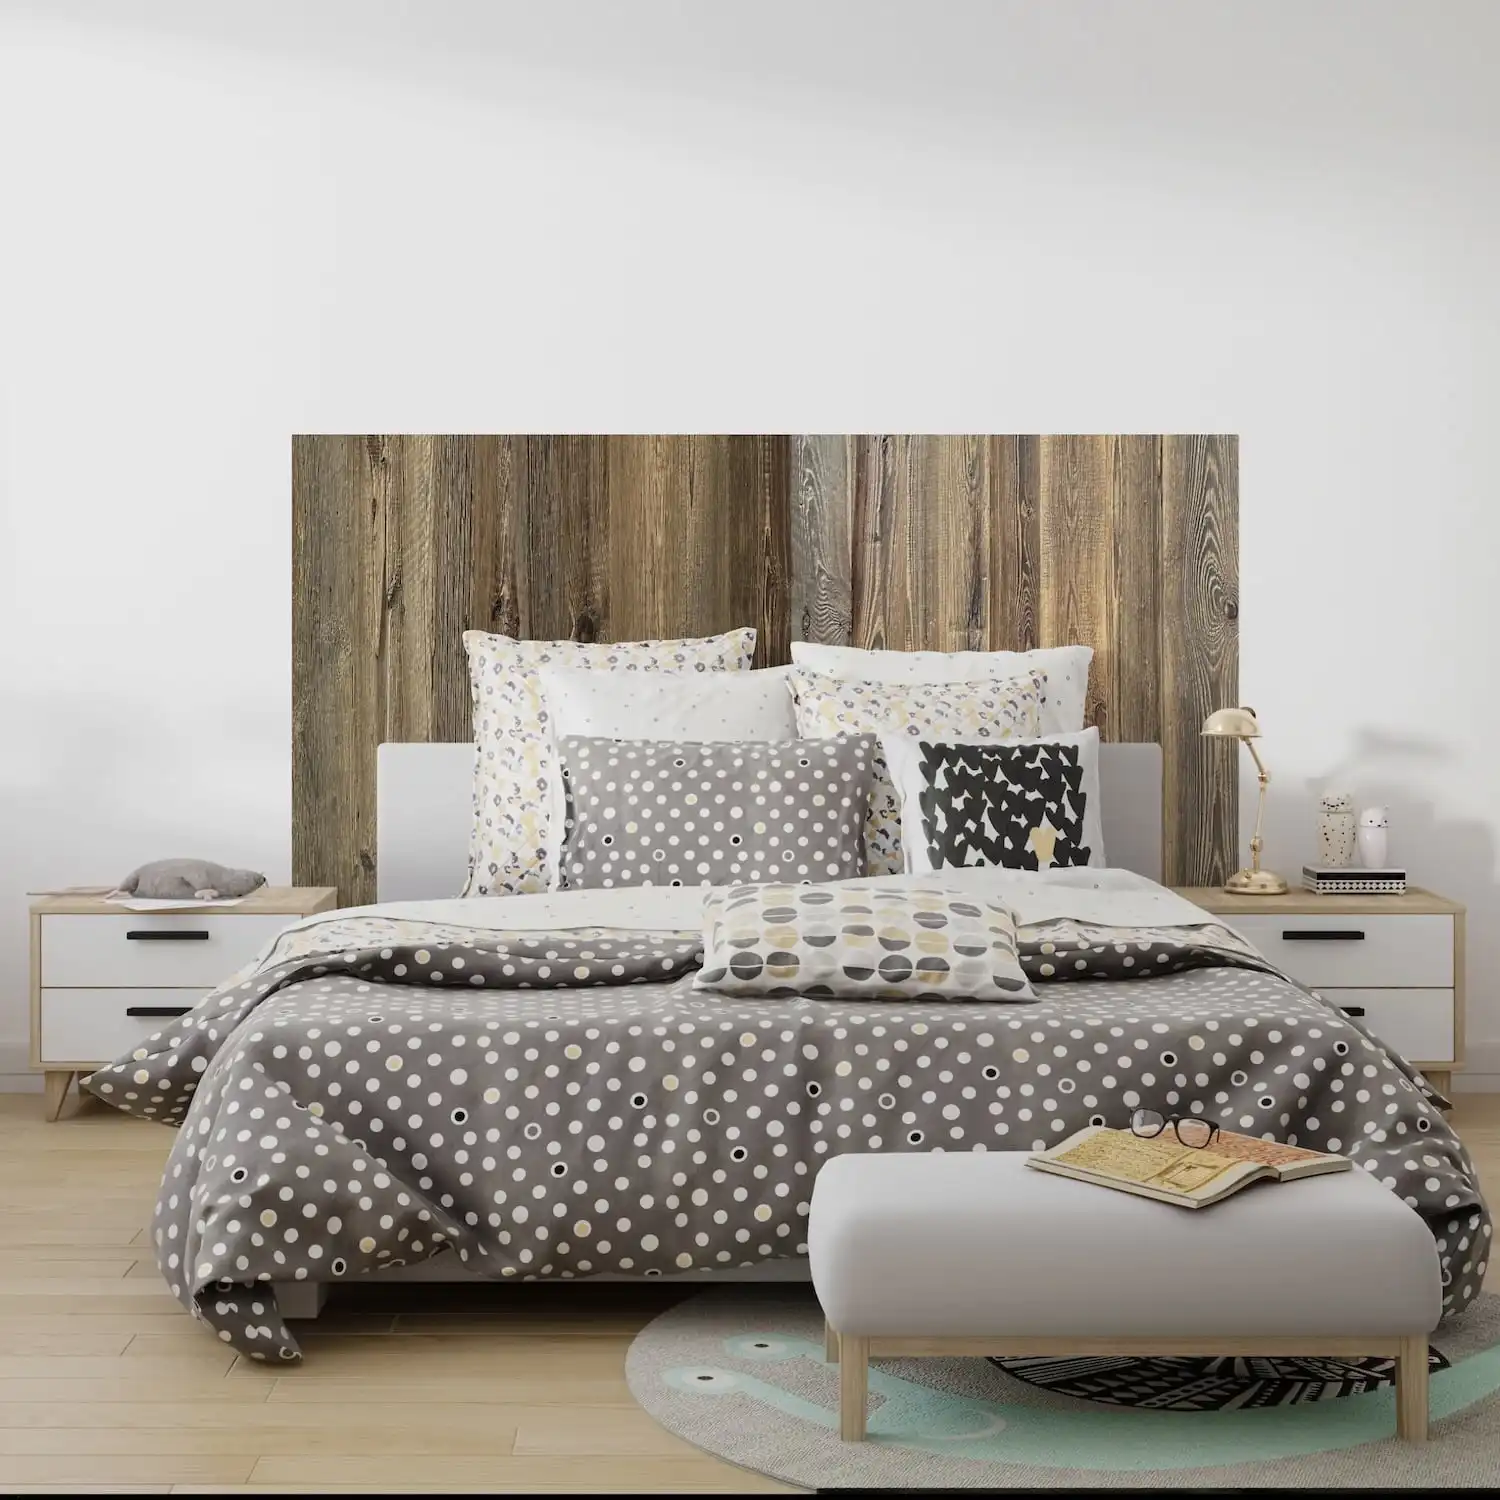  Chambre moderne avec literie à pois et tête de lit rustique en bois. 